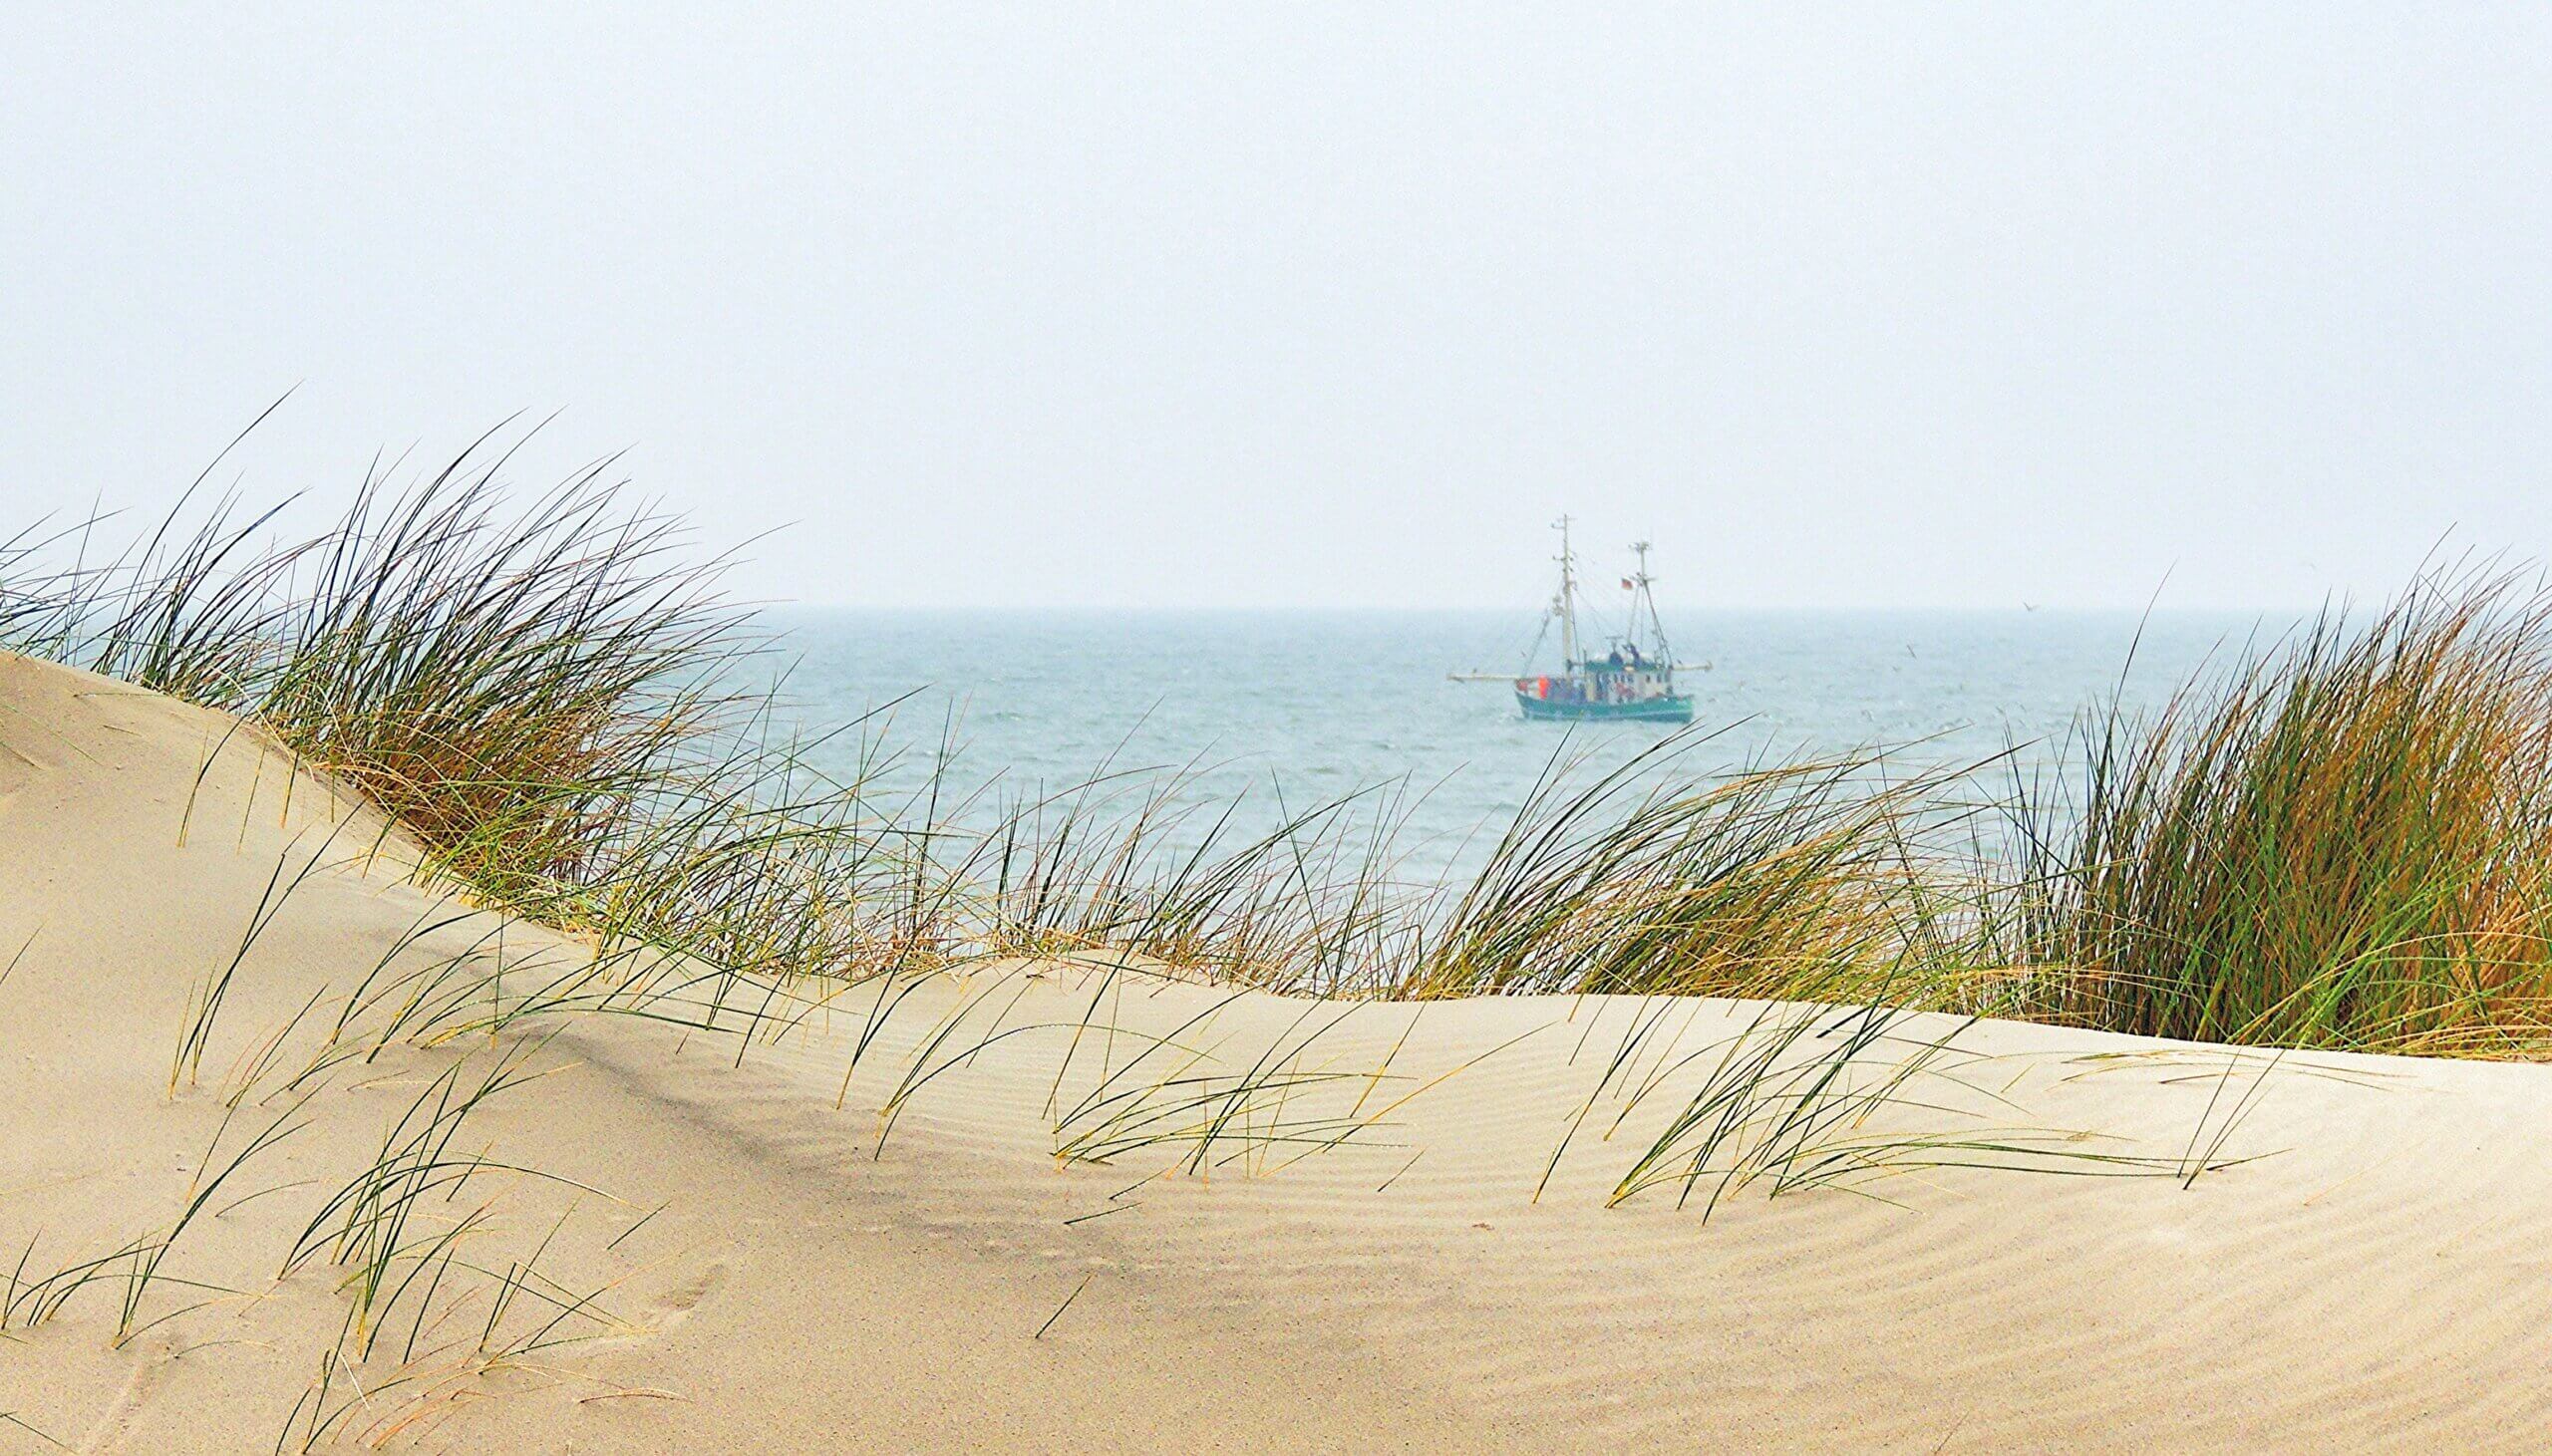 Urlaub in Norddeutschland, Nordsee, Strand, Sand, Meer